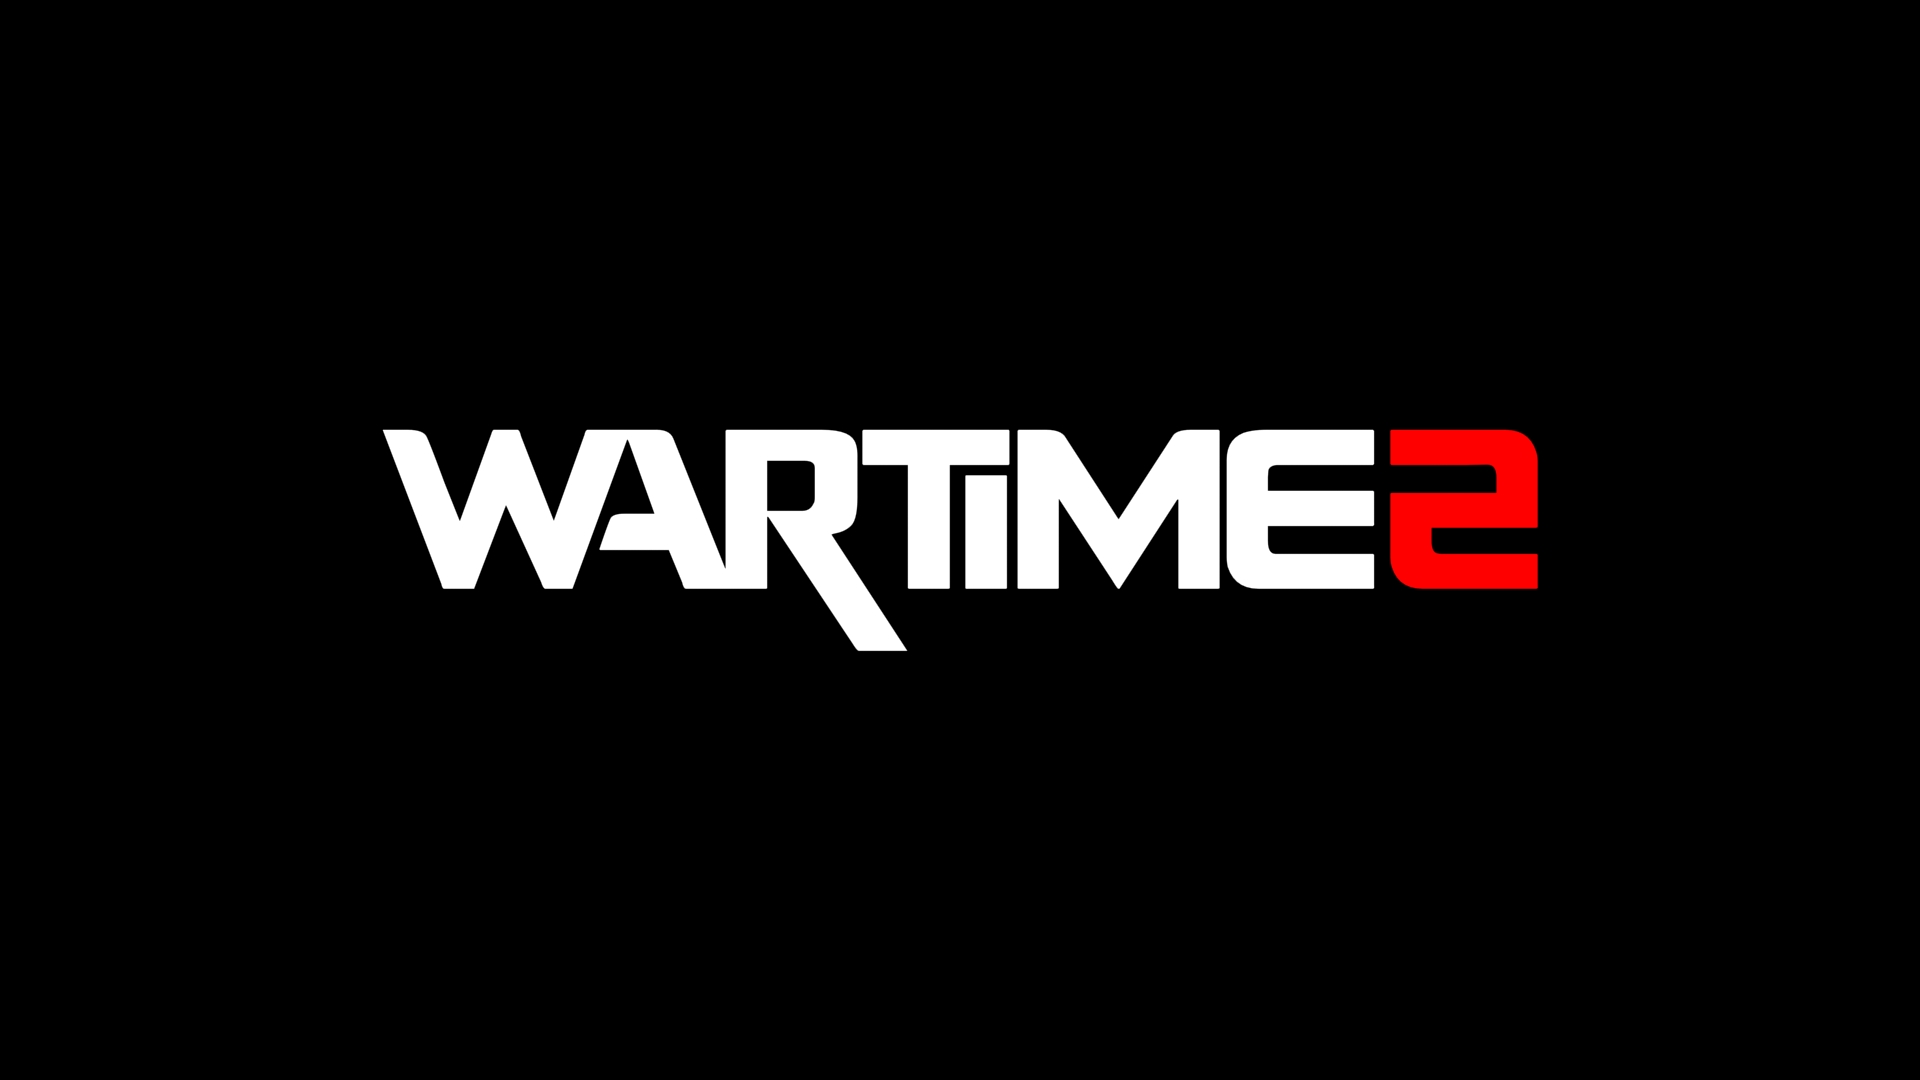 اختصاصی : اولین اطلاعات رسمی از WARTIME 2 در ویژه نامه ی گیمفاپلاس - گیمفا